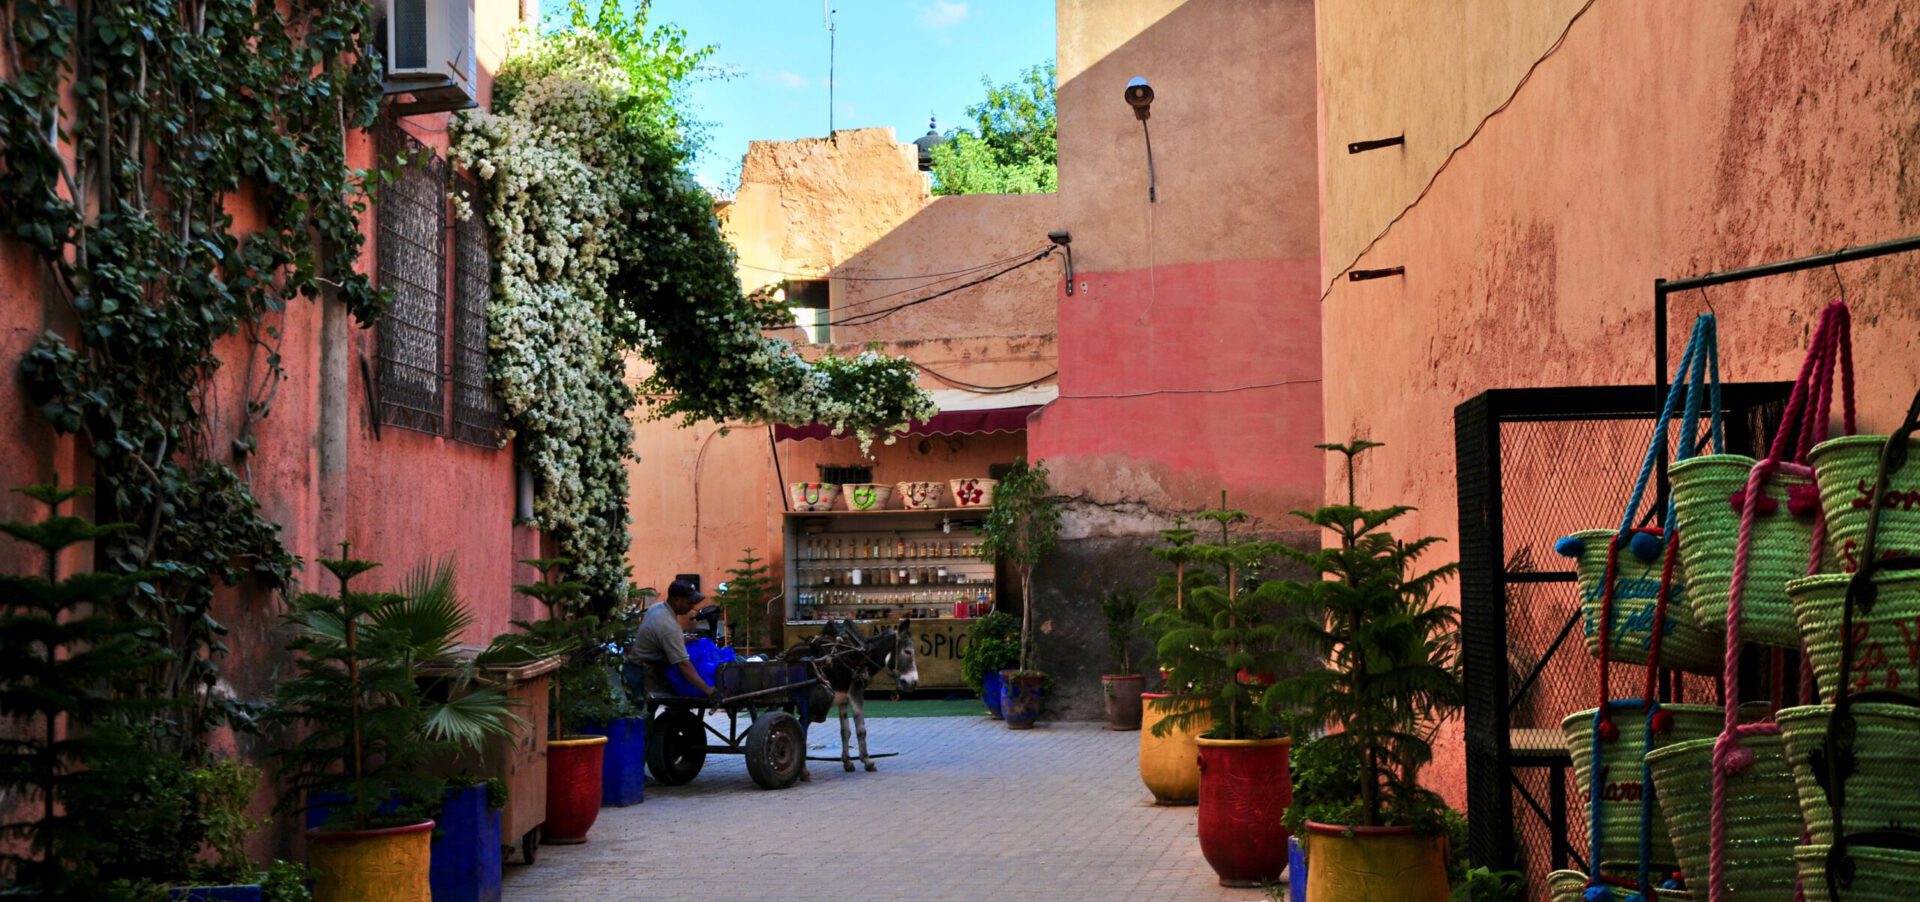 Marrakech_Alleys